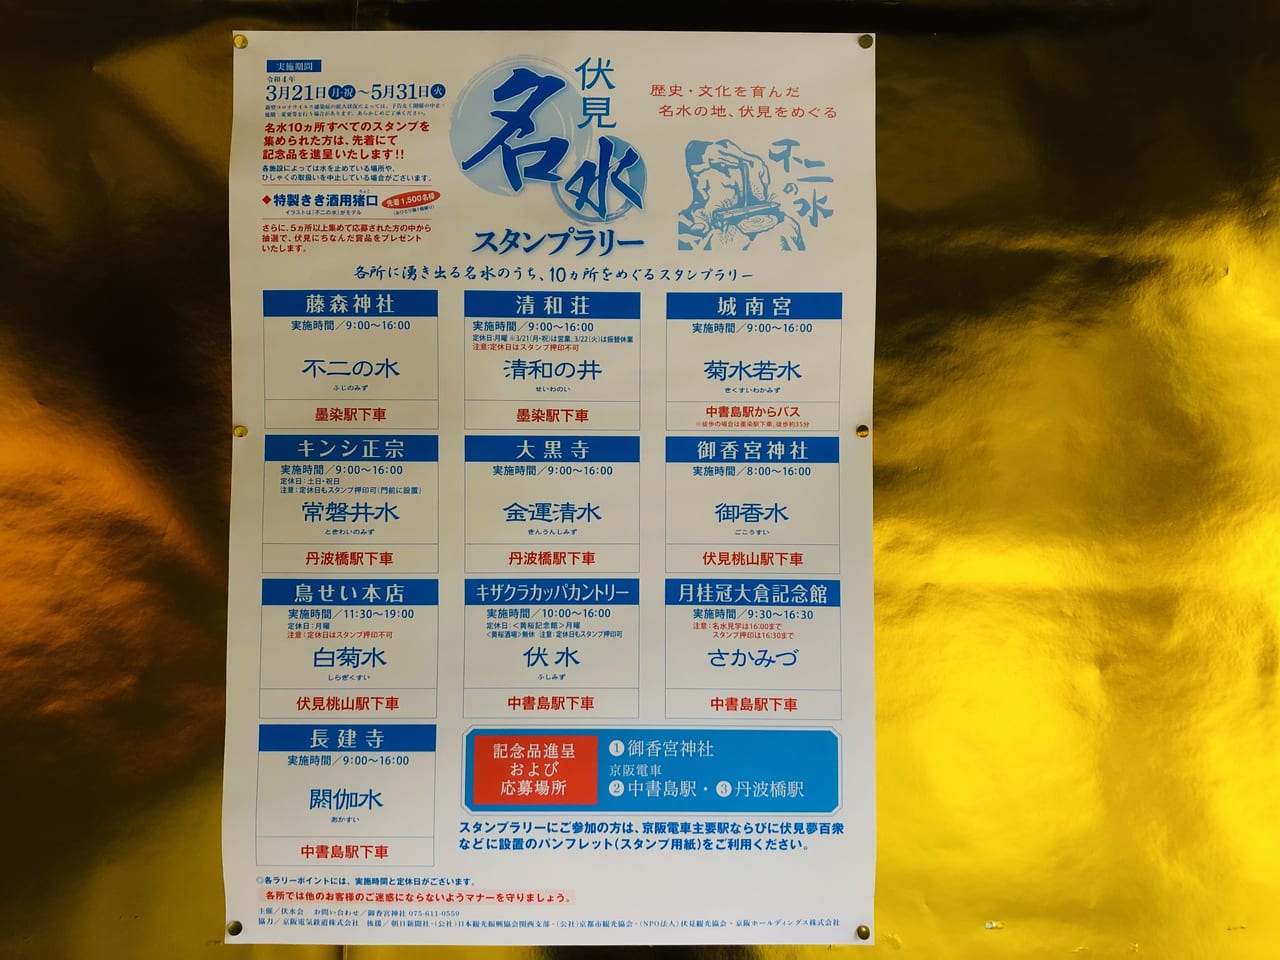 京都市伏見区 今年も伏見名水スタンプラリーが始まりました 各所でスタンプを集めて記念品をgetしましょ 号外net 伏見区